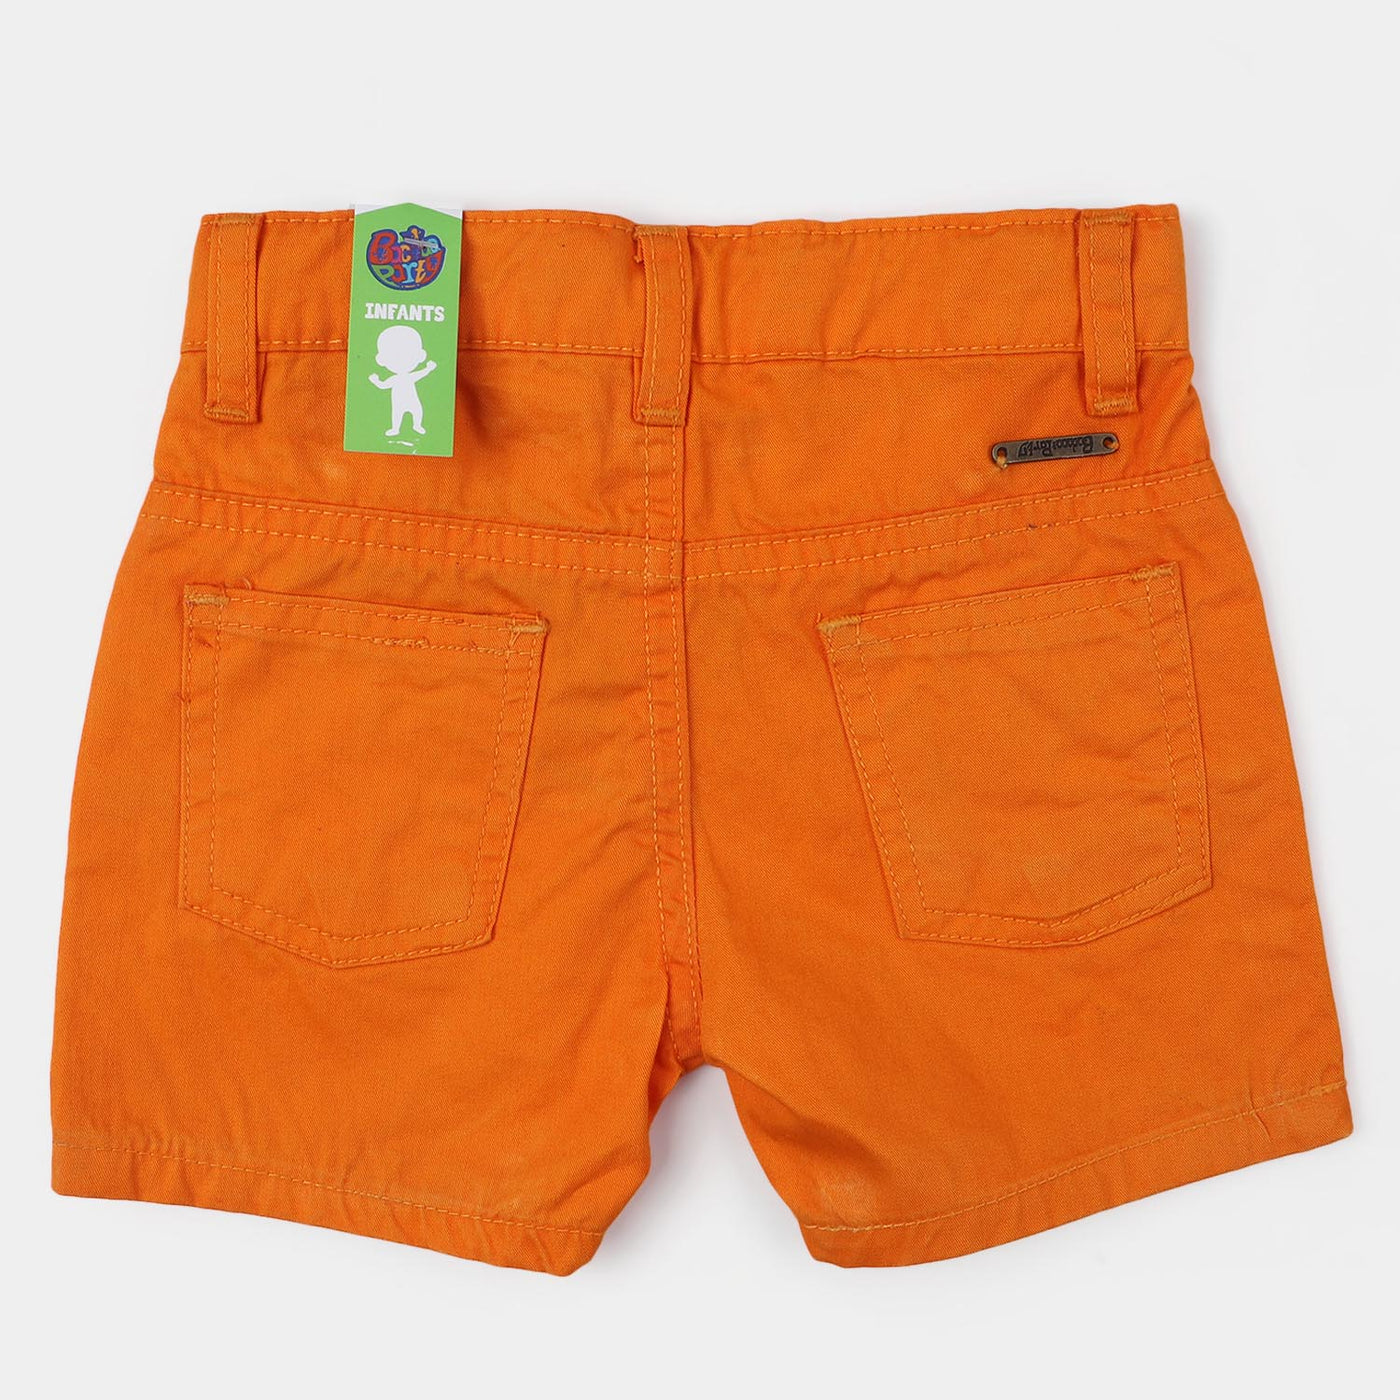 Infant Boys Cotton Short Basic - Orange